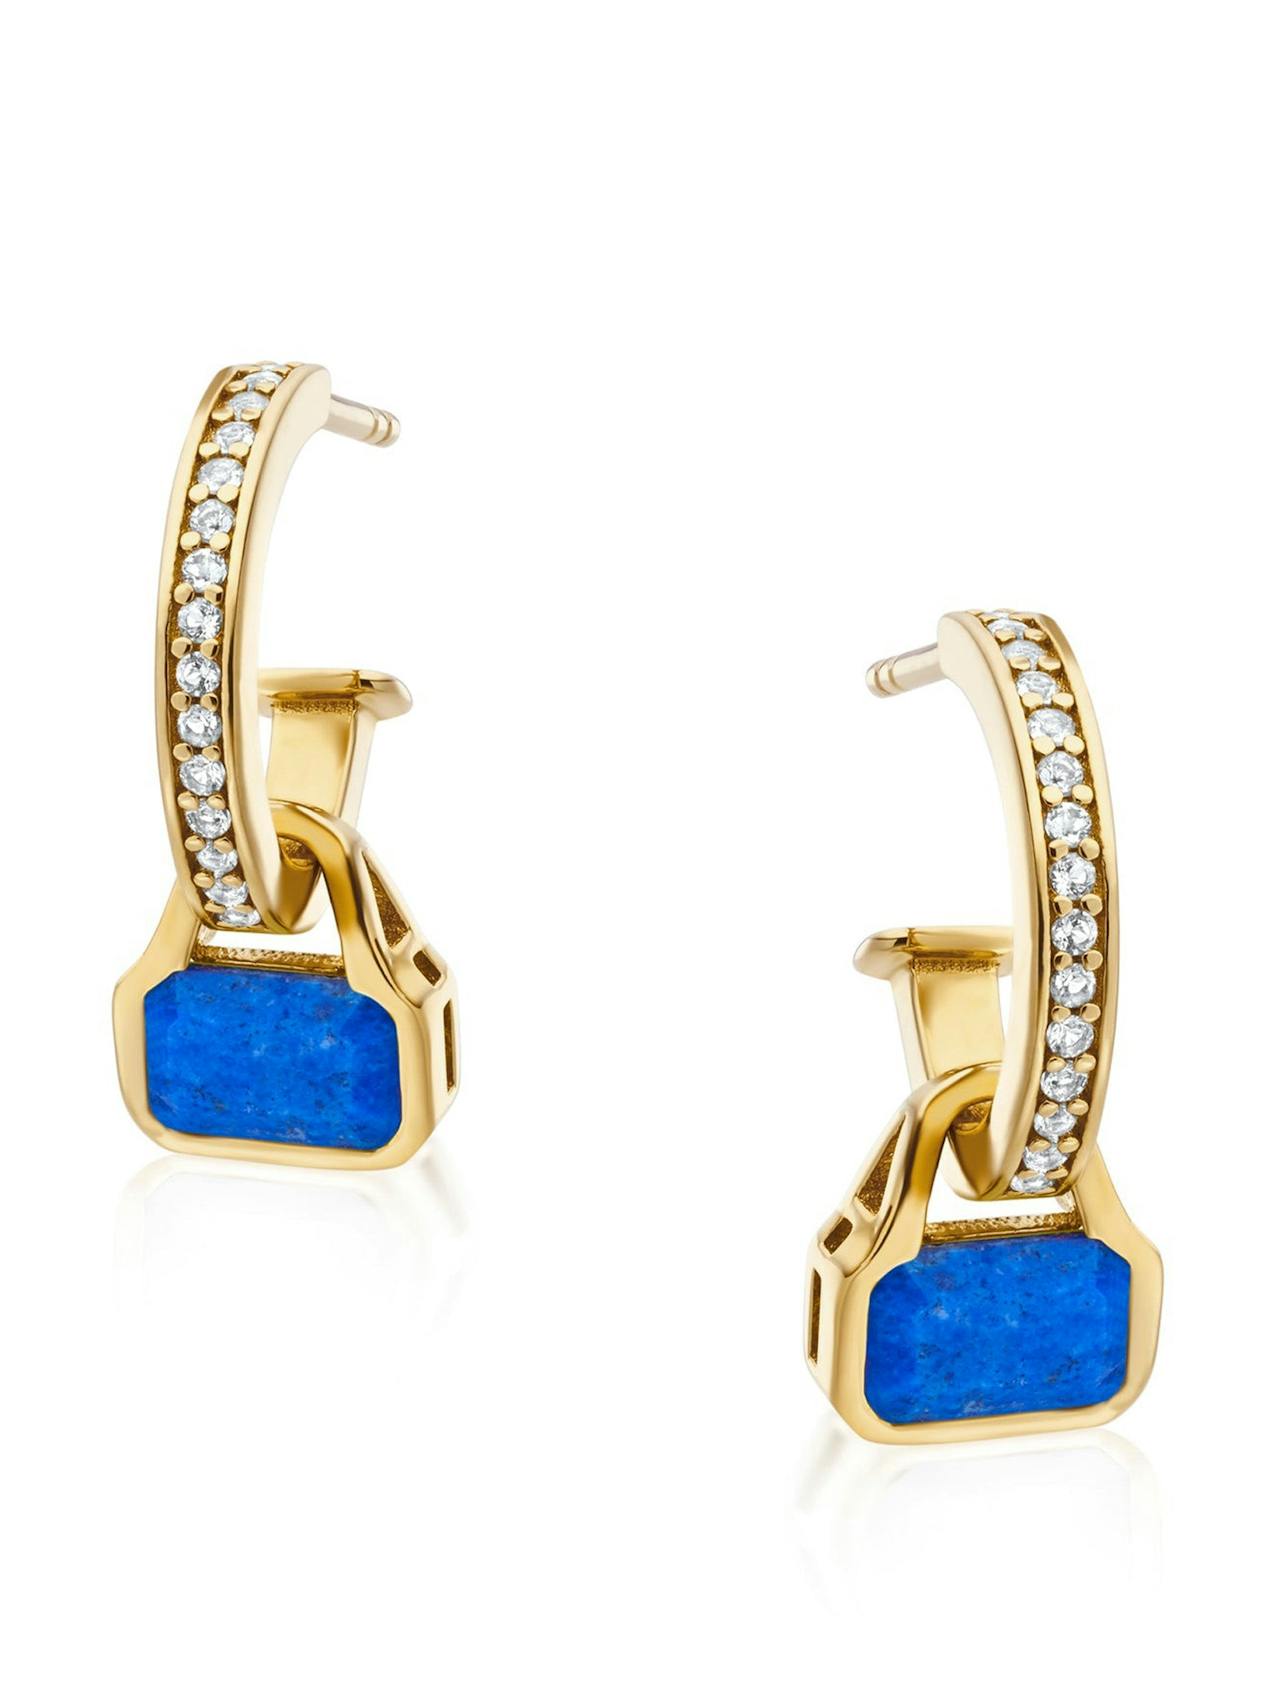 Blue Lapis charms on white topaz hoop earrings